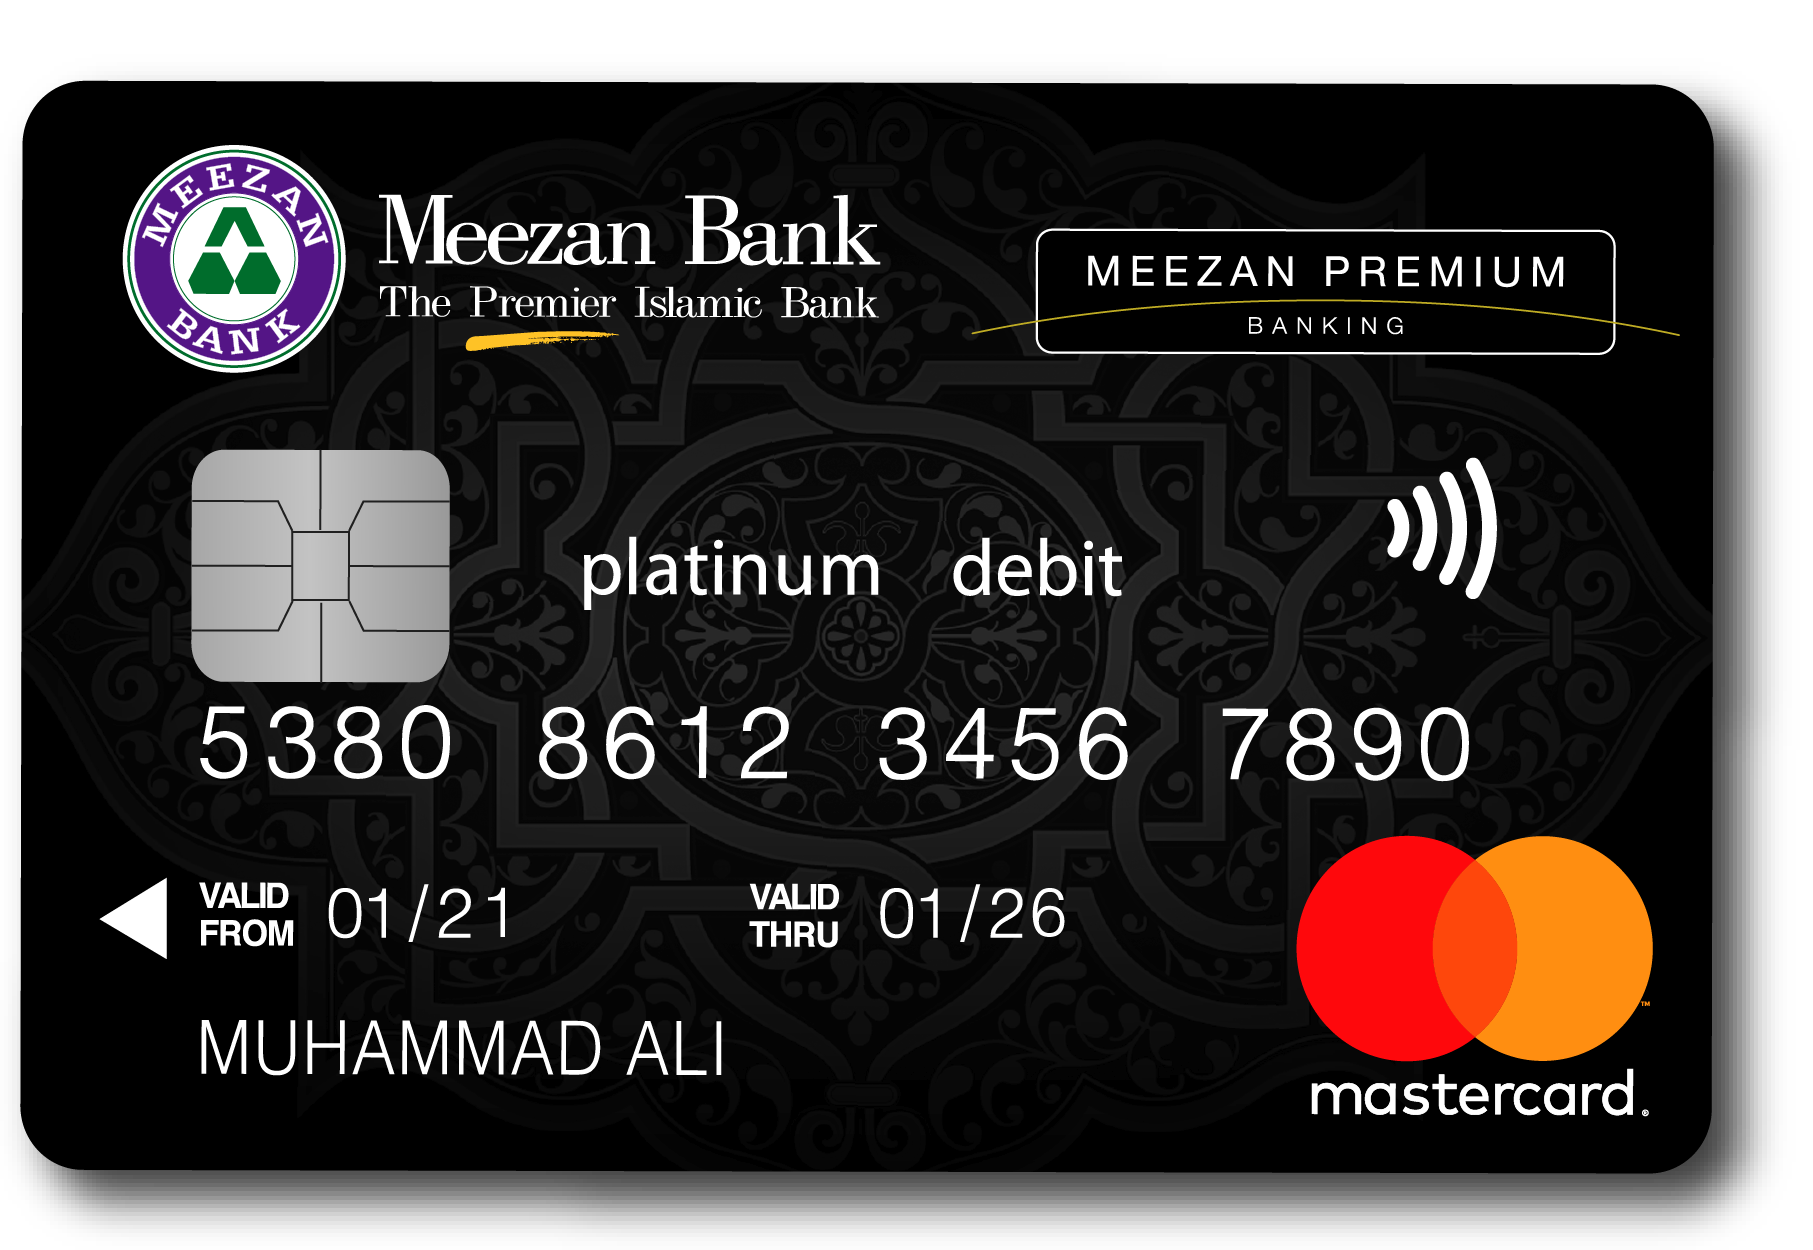 Premium Banking Debit Cards Card Banking Meezan Bank